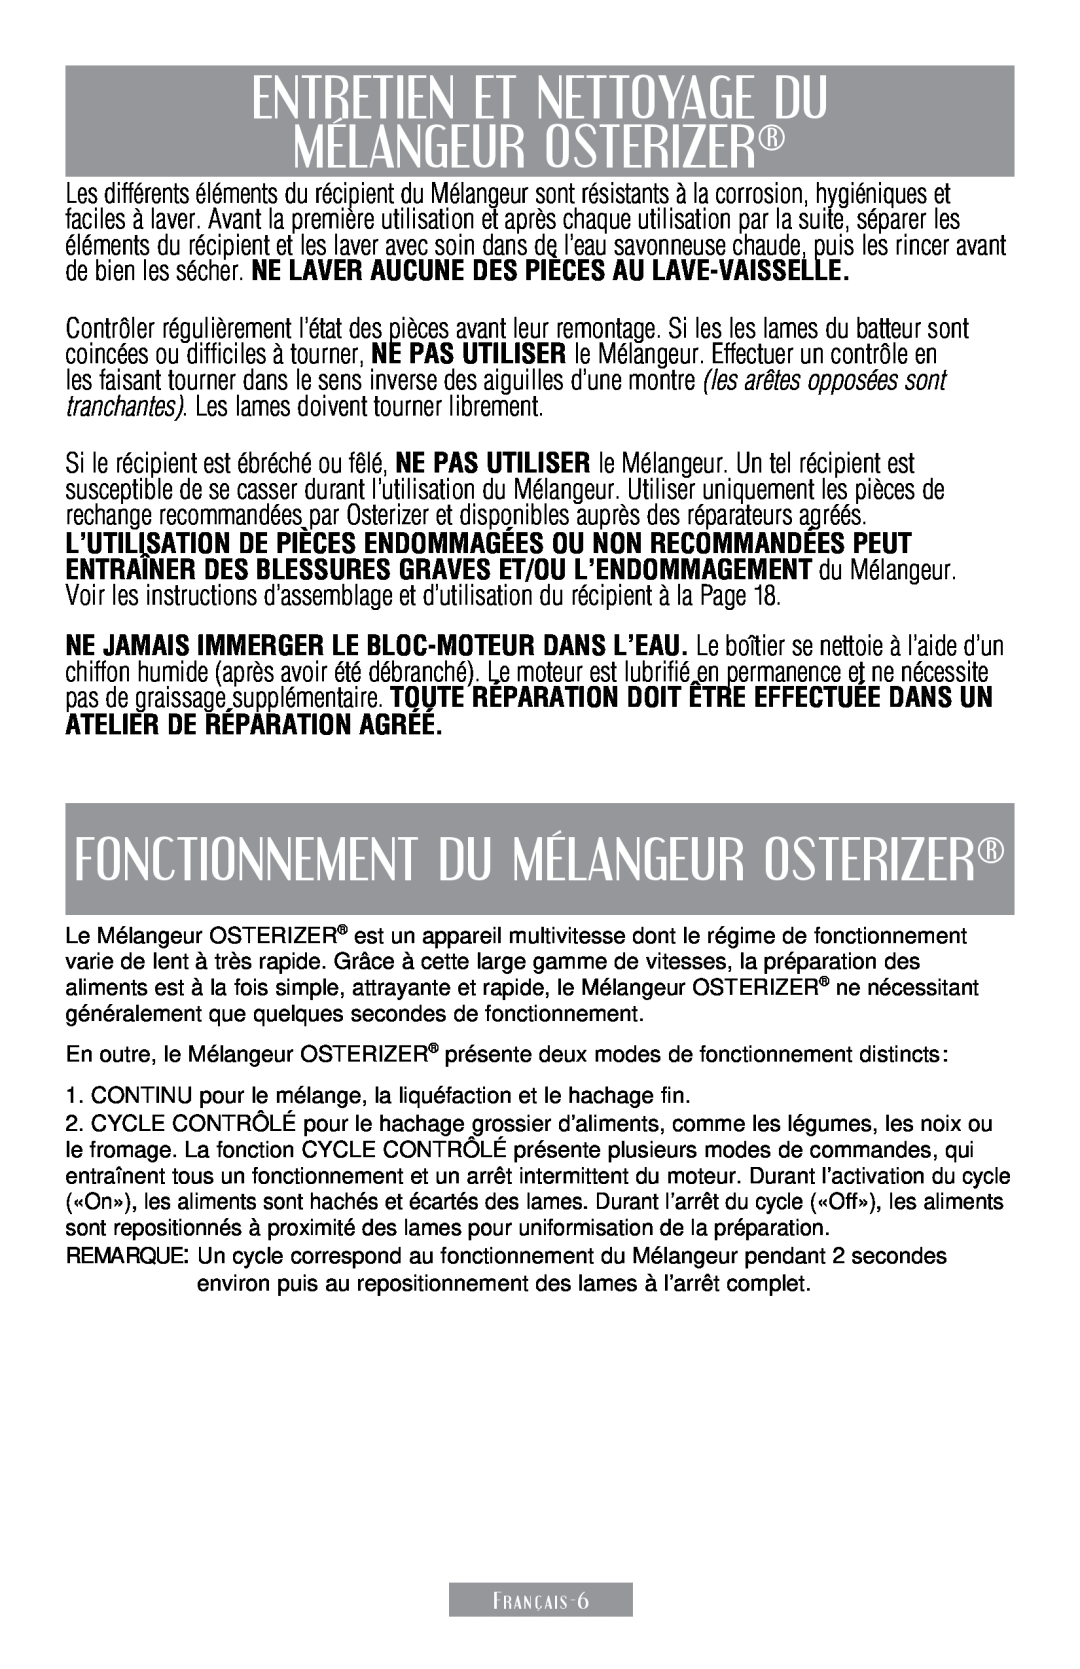 Sunbeam 250-22 instruction manual Entretien Et Nettoyage Du Mélangeur Osterizer, Fonctionnement Du Mélangeur Osterizer 